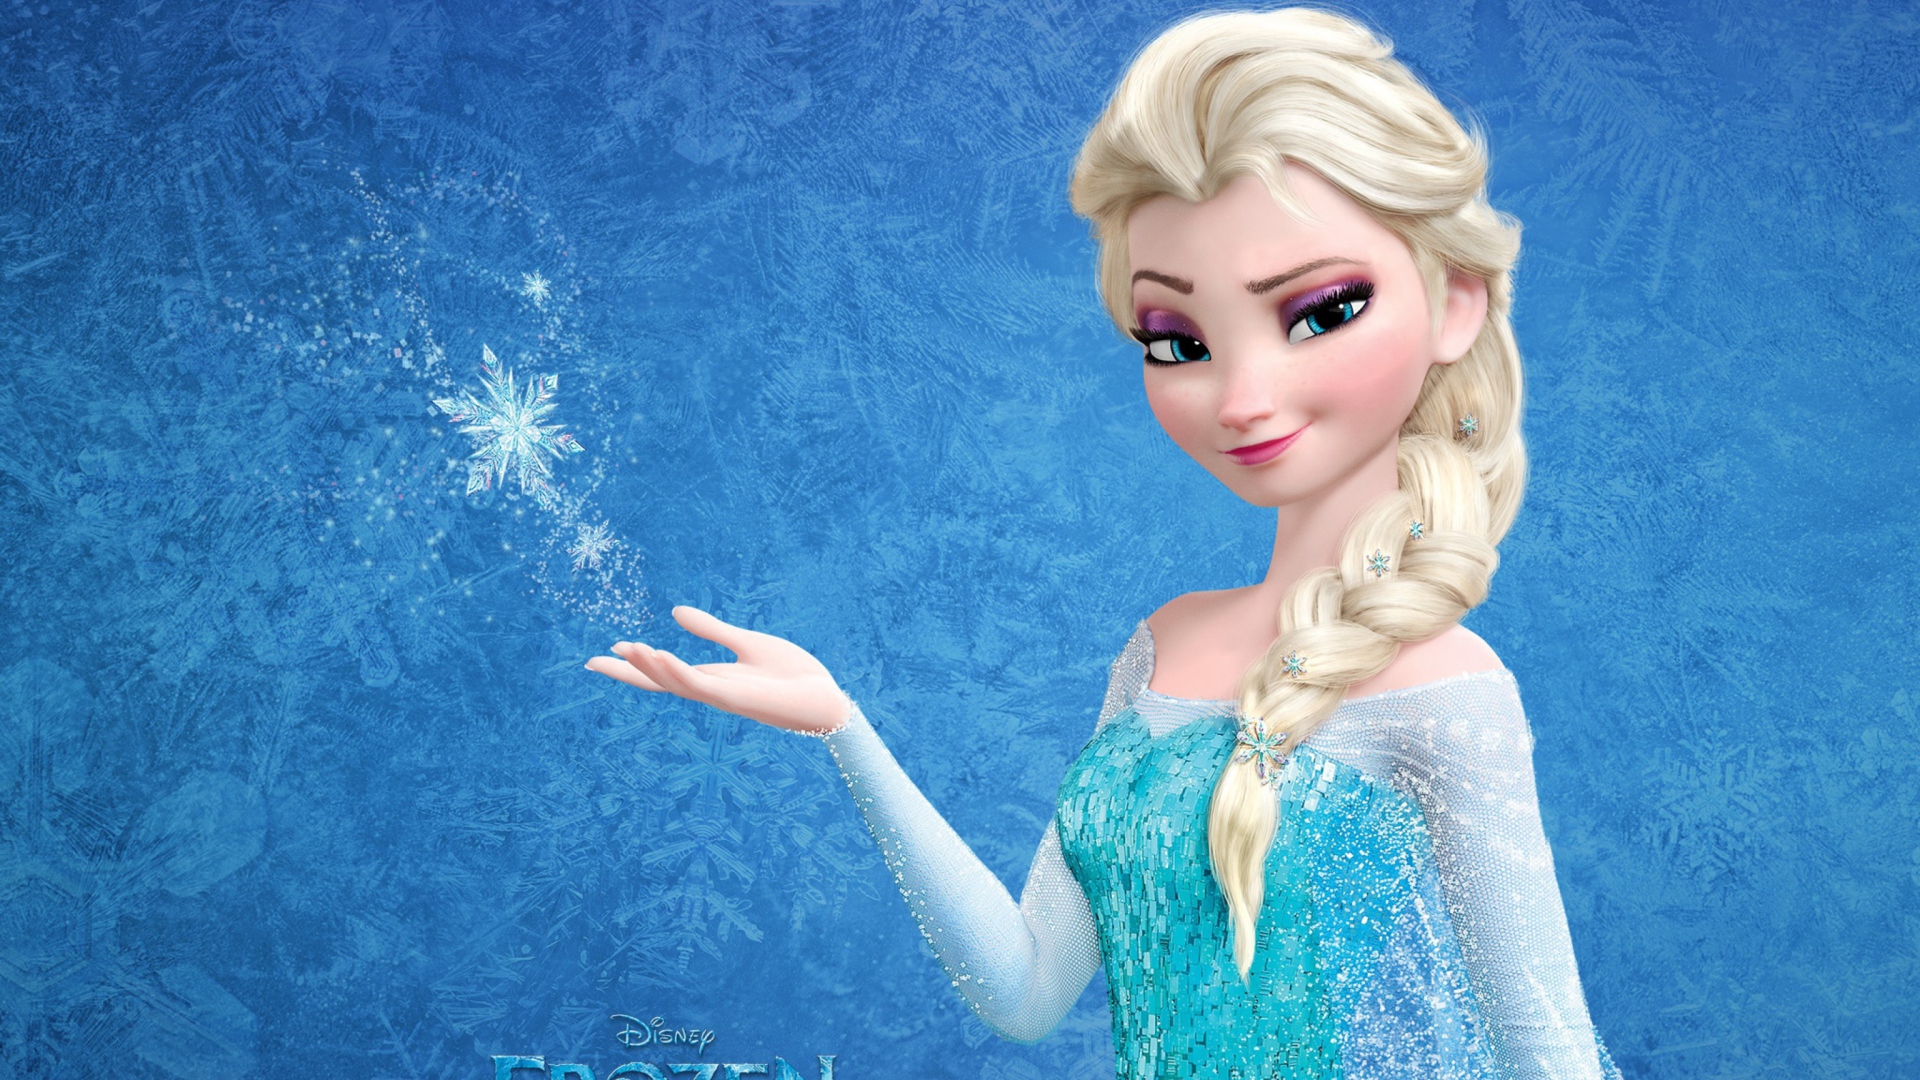 Snow Queen Elsa In Frozen wallpaper 1920x1080